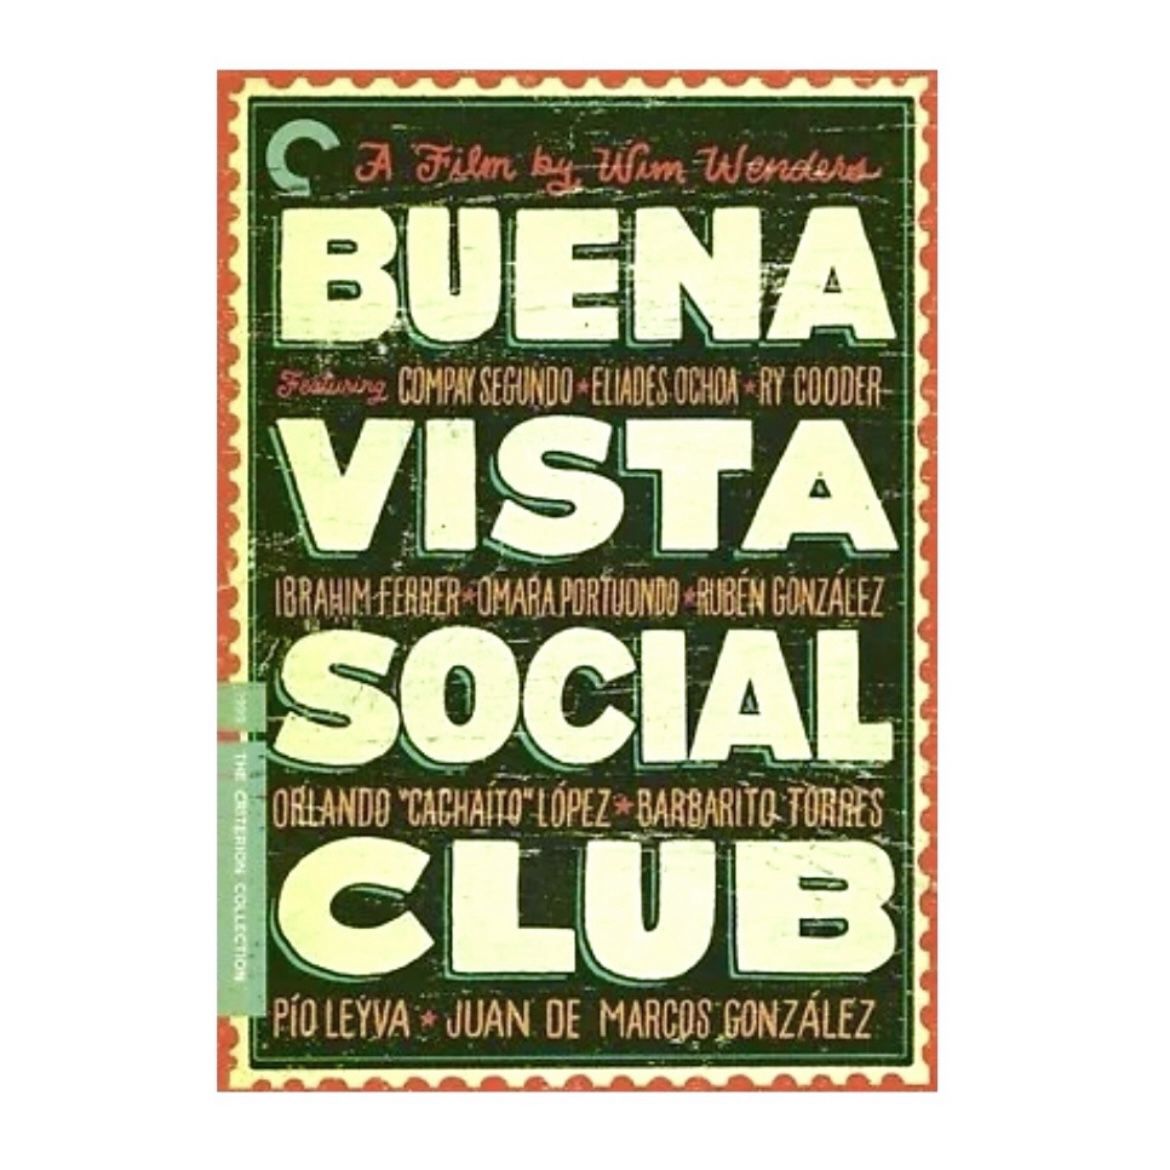 Buena Vista Social Club: Criterion Collection (DVD, 1999)